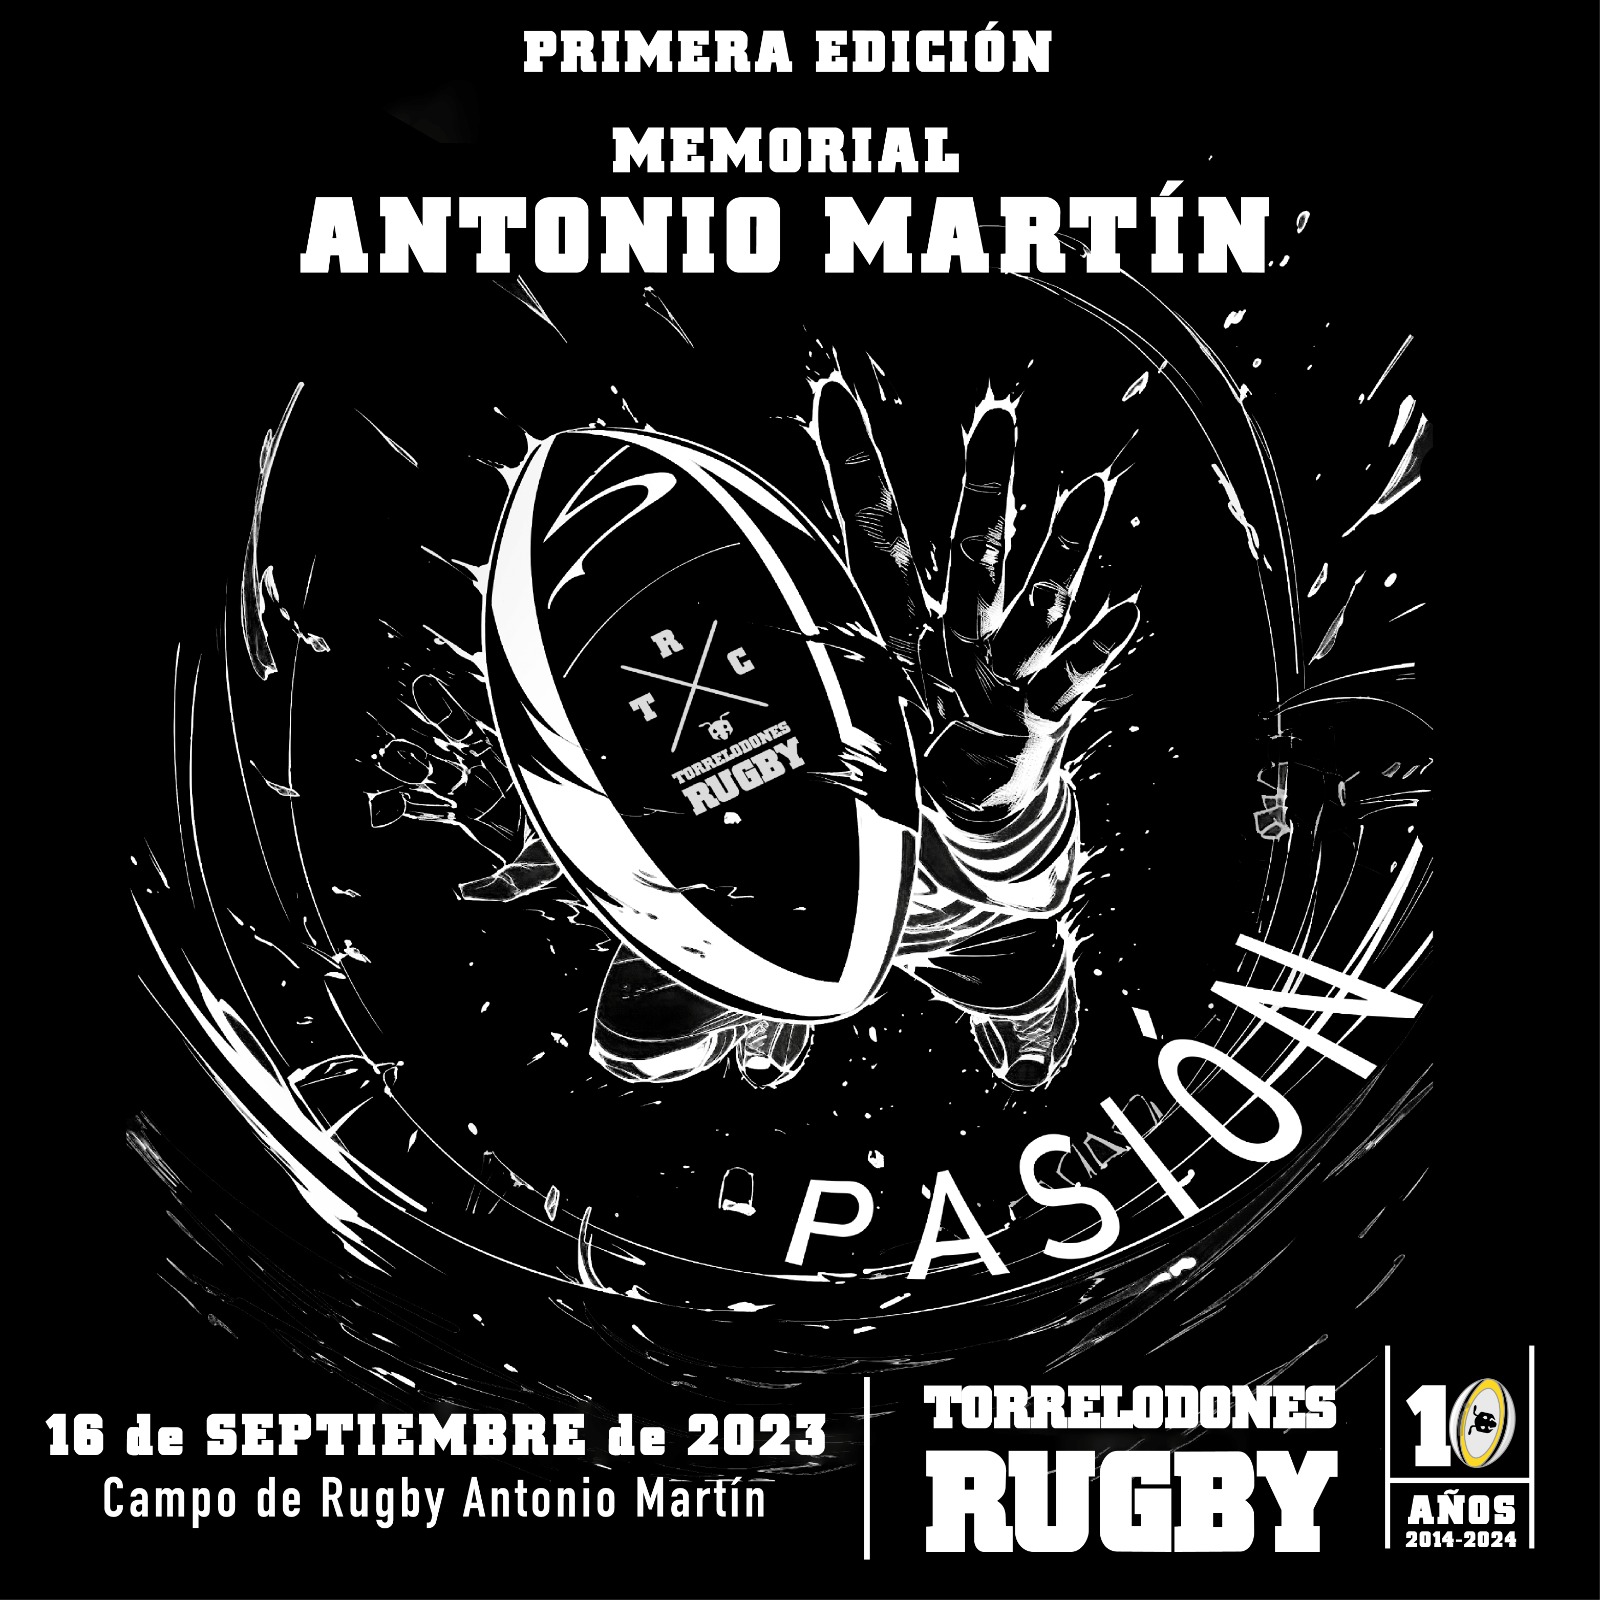 Torrelodones Rugby Club celebra el primer Memorial Antonio Martín